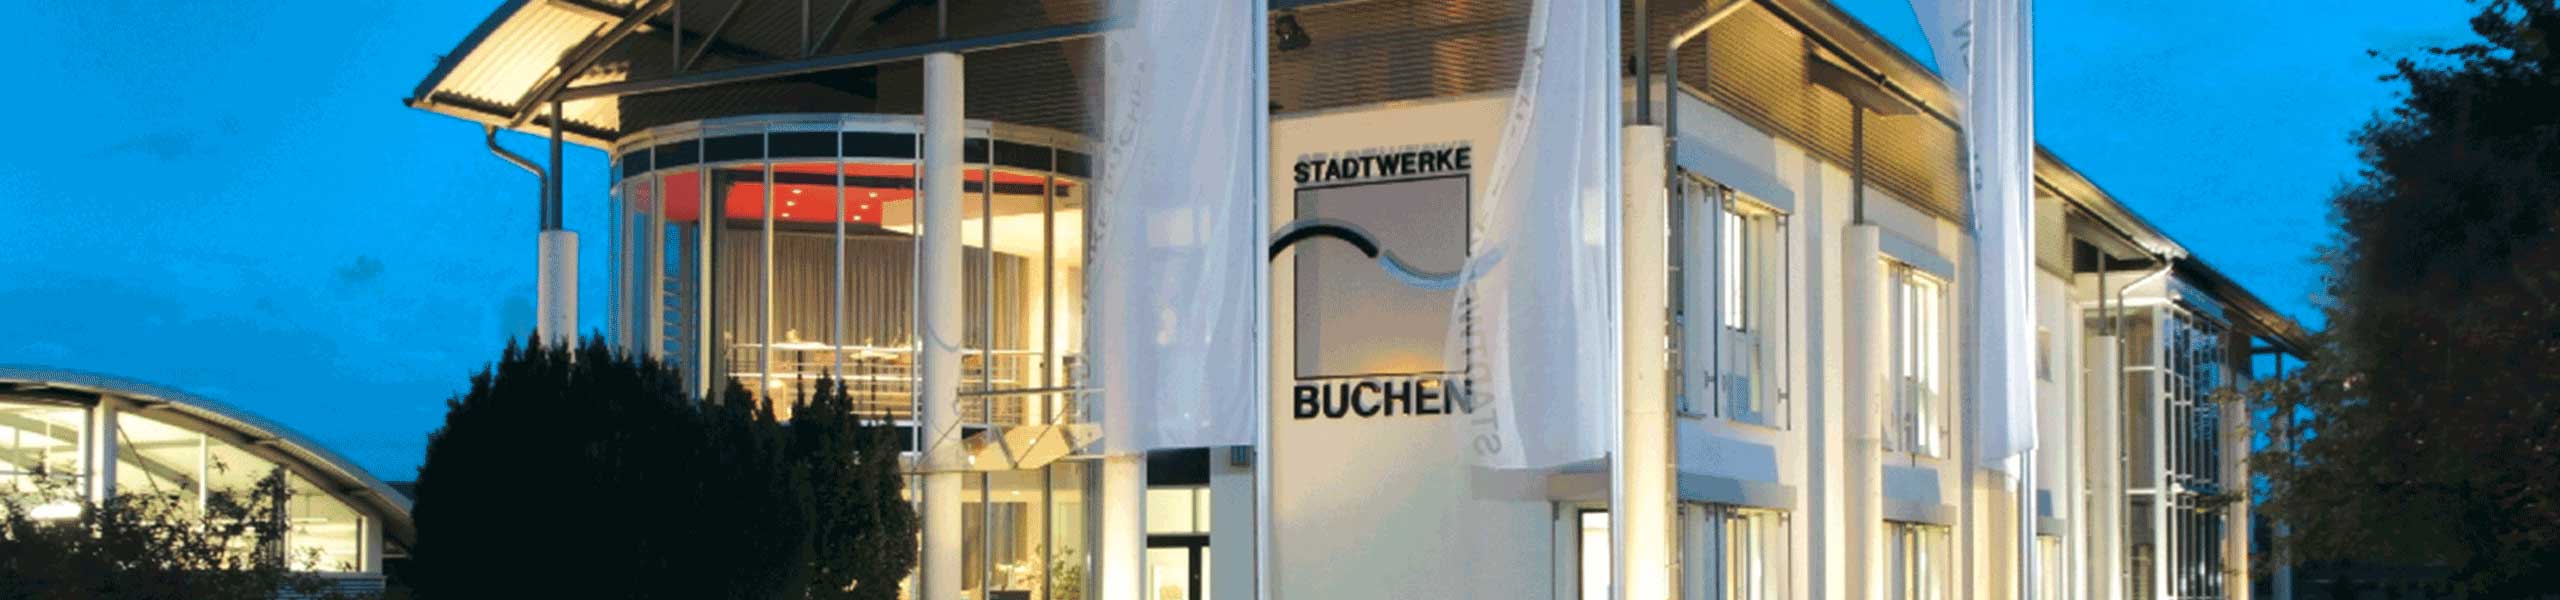 Stadtwerke Buchen GmbH & Co KG - Ihr Versorger vor Ort - Datenschutz